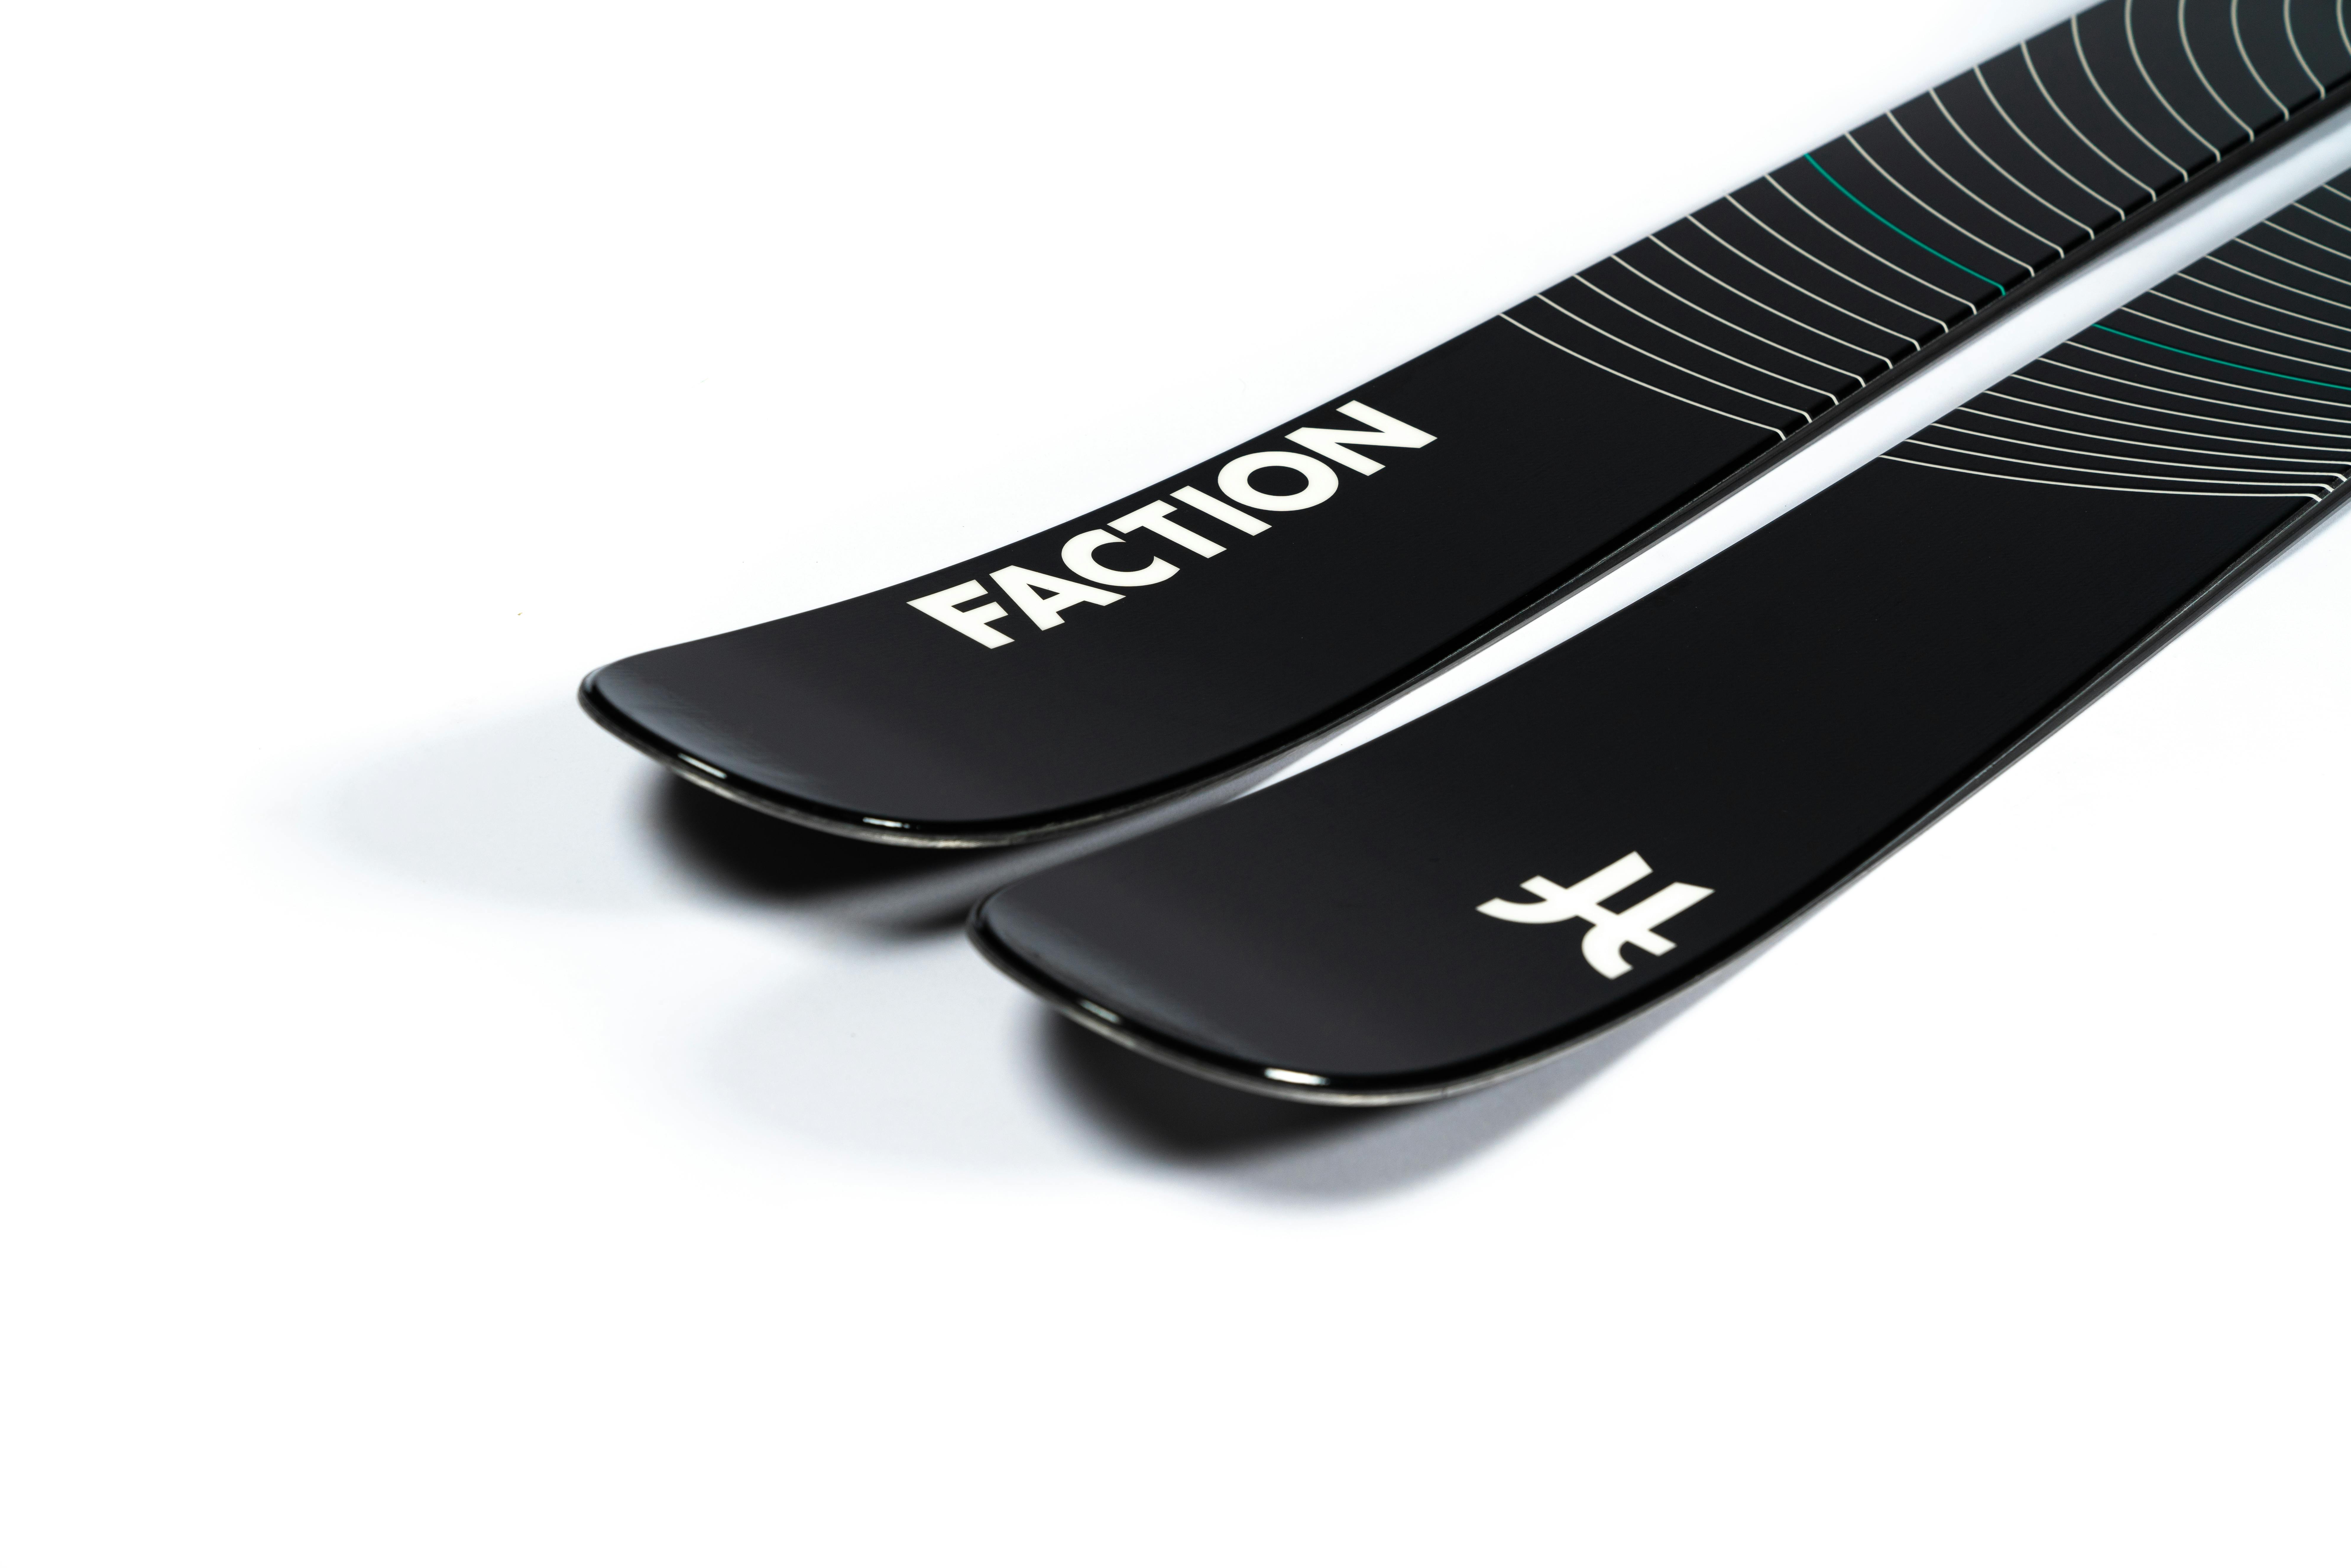 Faction Mana 3 Skis · 2023 · 172 cm